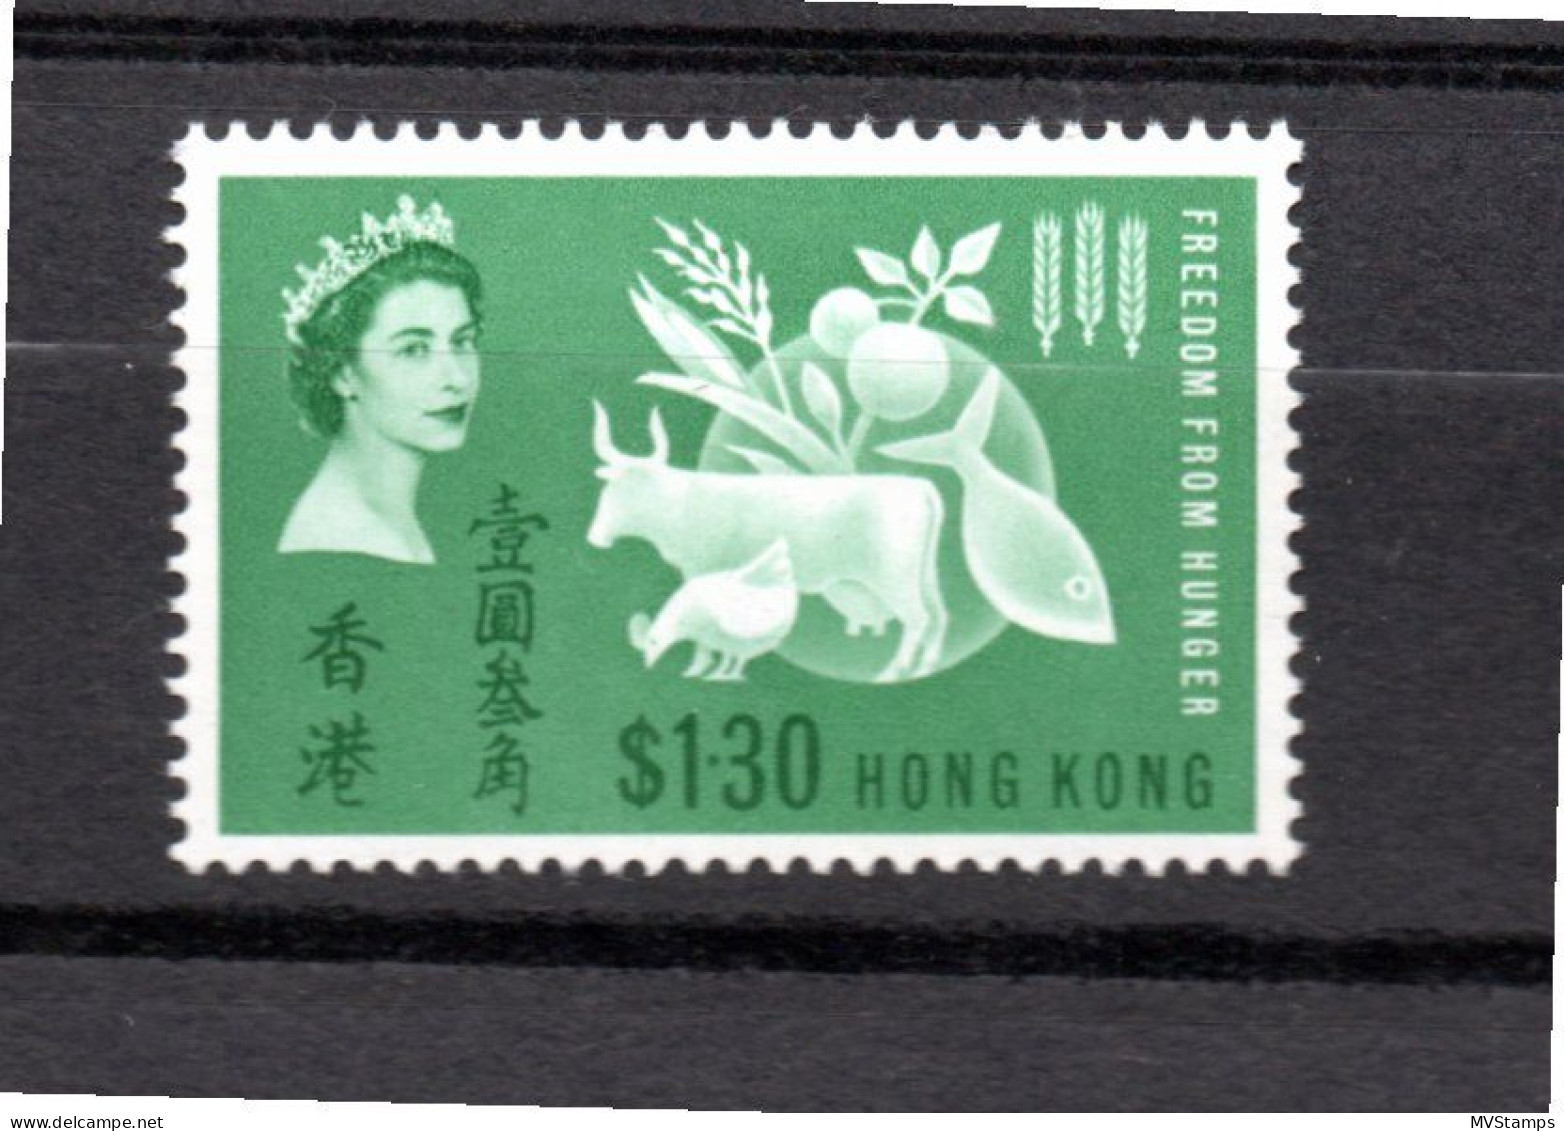 Hong Kong 1963 Hunger/Cow $1.30 Stamp (Michel 211) MNH - Nuevos